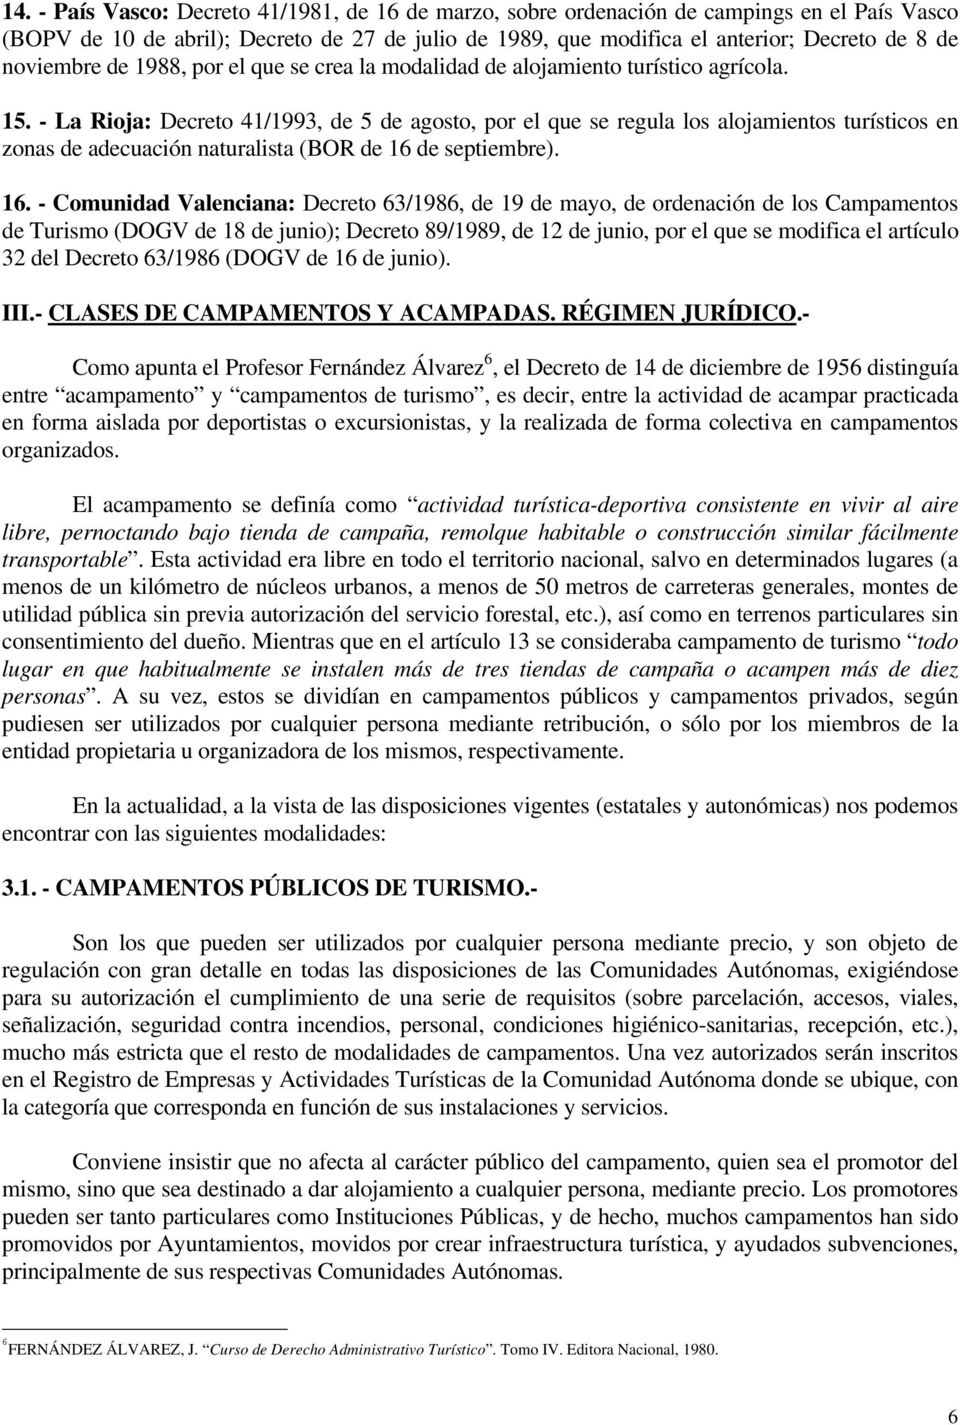 - La Rioja: Decreto 41/1993, de 5 de agosto, por el que se regula los alojamientos turísticos en zonas de adecuación naturalista (BOR de 16 